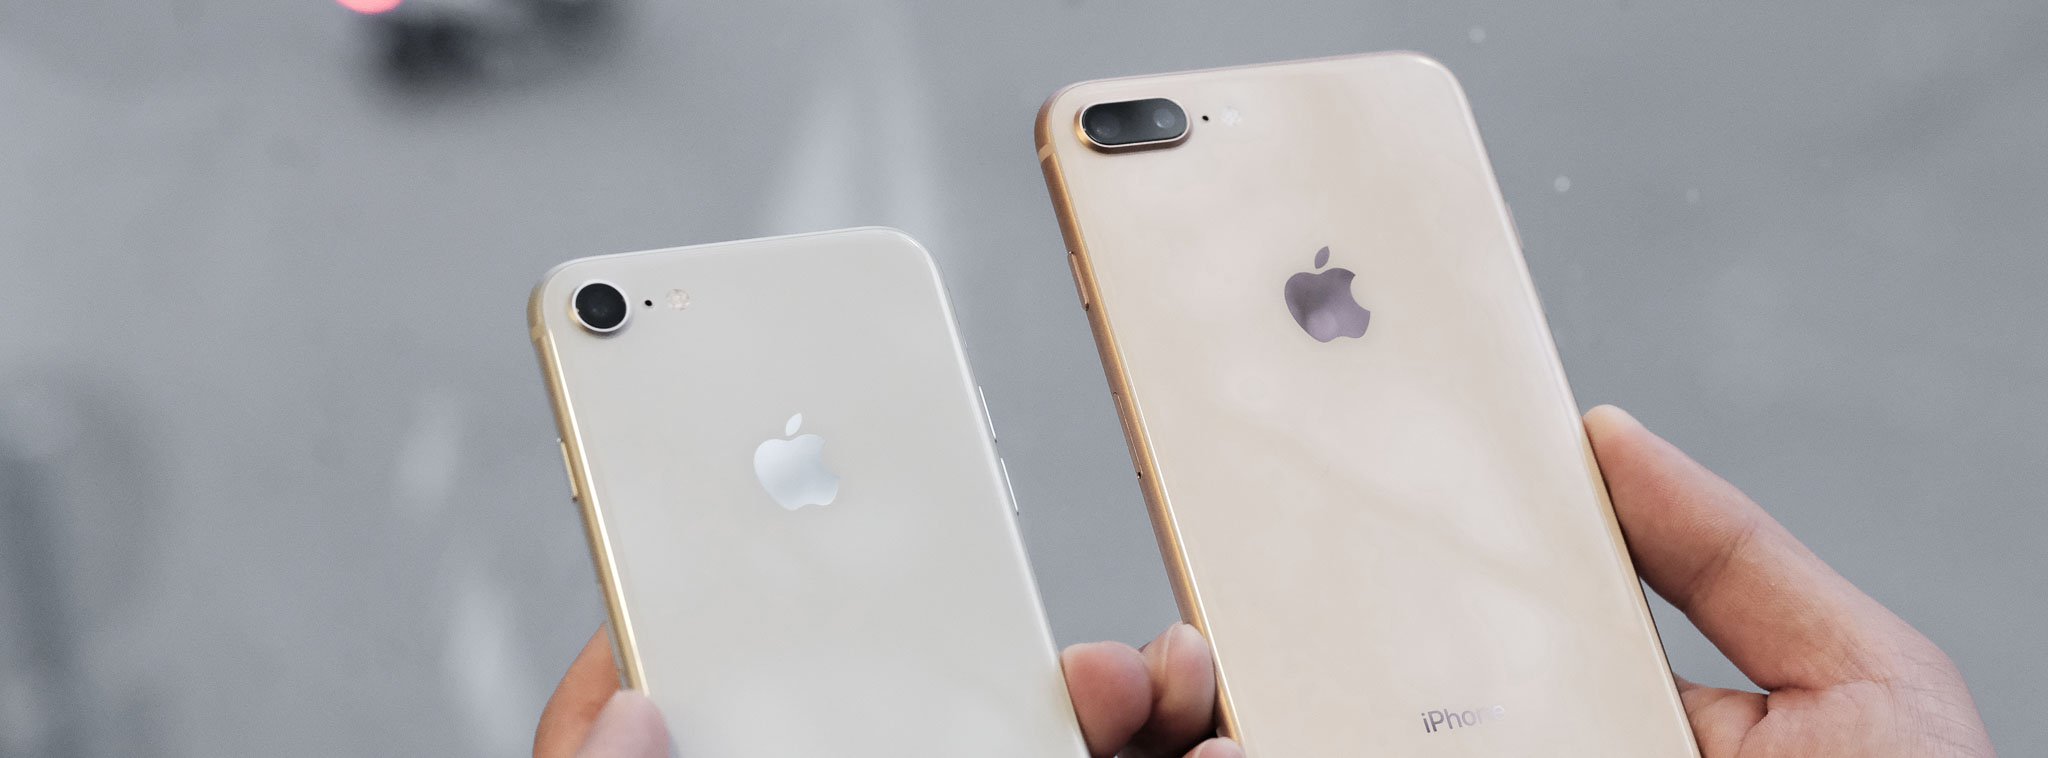 Qualcomm nộp đơn kiện lên tòa án Trung Quốc, muốn cấm bán và cấm sản xuất iPhone